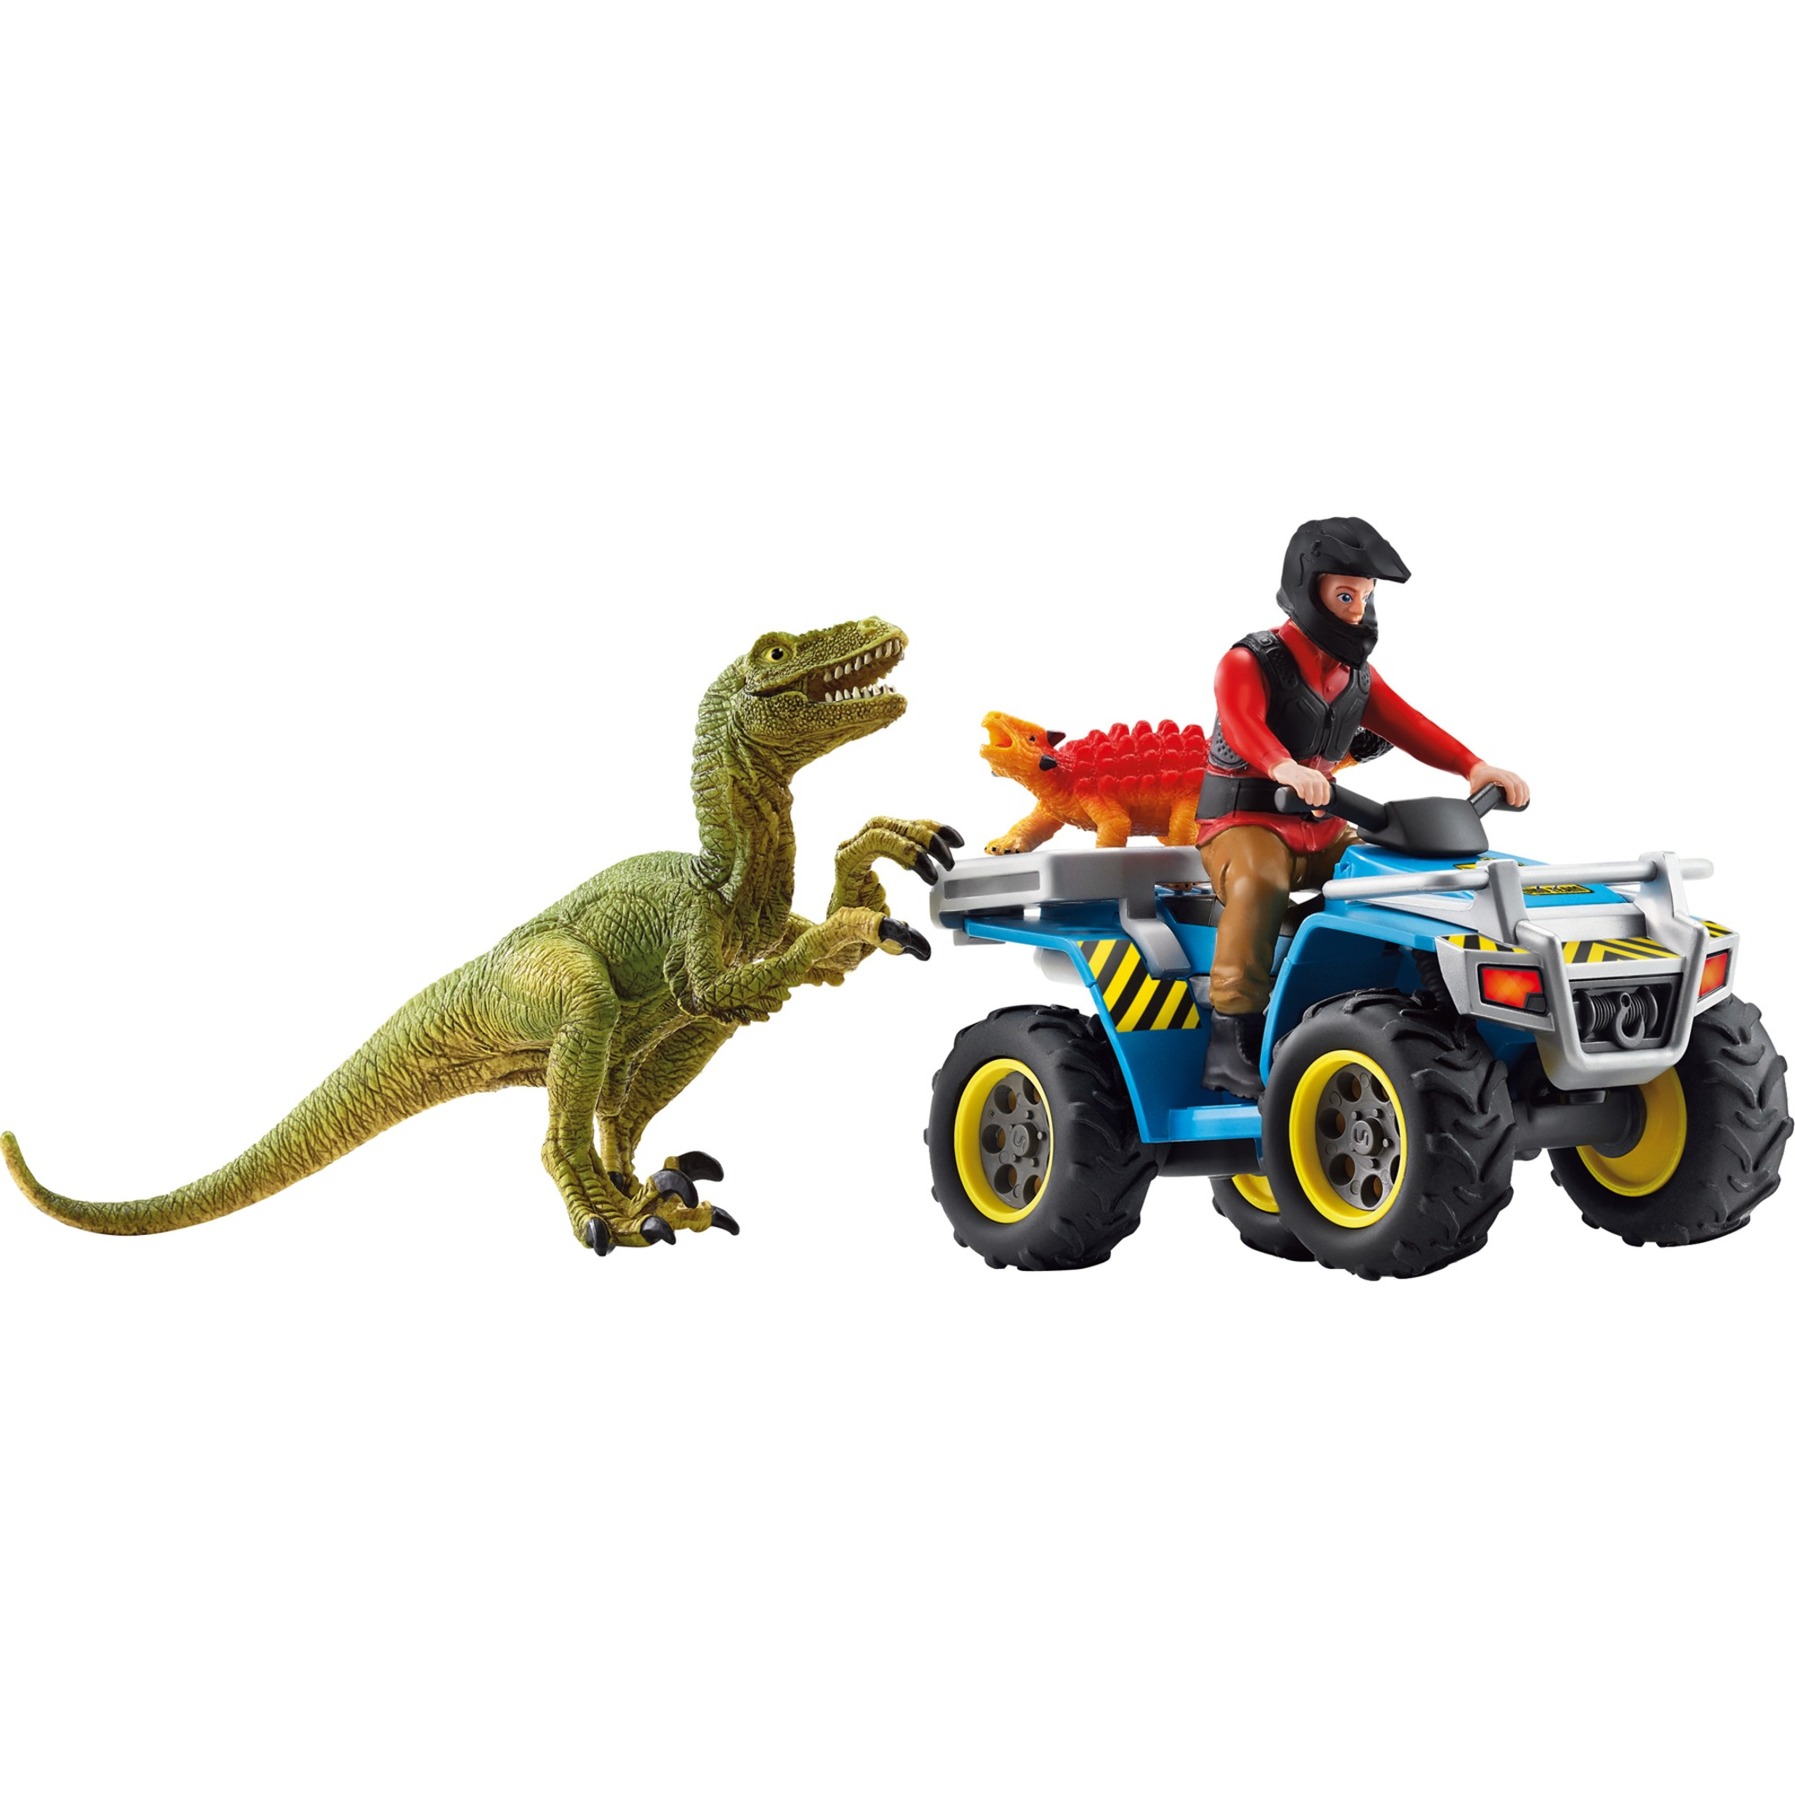 Schleich Spielzeug-Quad Dinosaurs, Flucht auf Quad vor Velociraptor (41466), (Set), Made in Europe